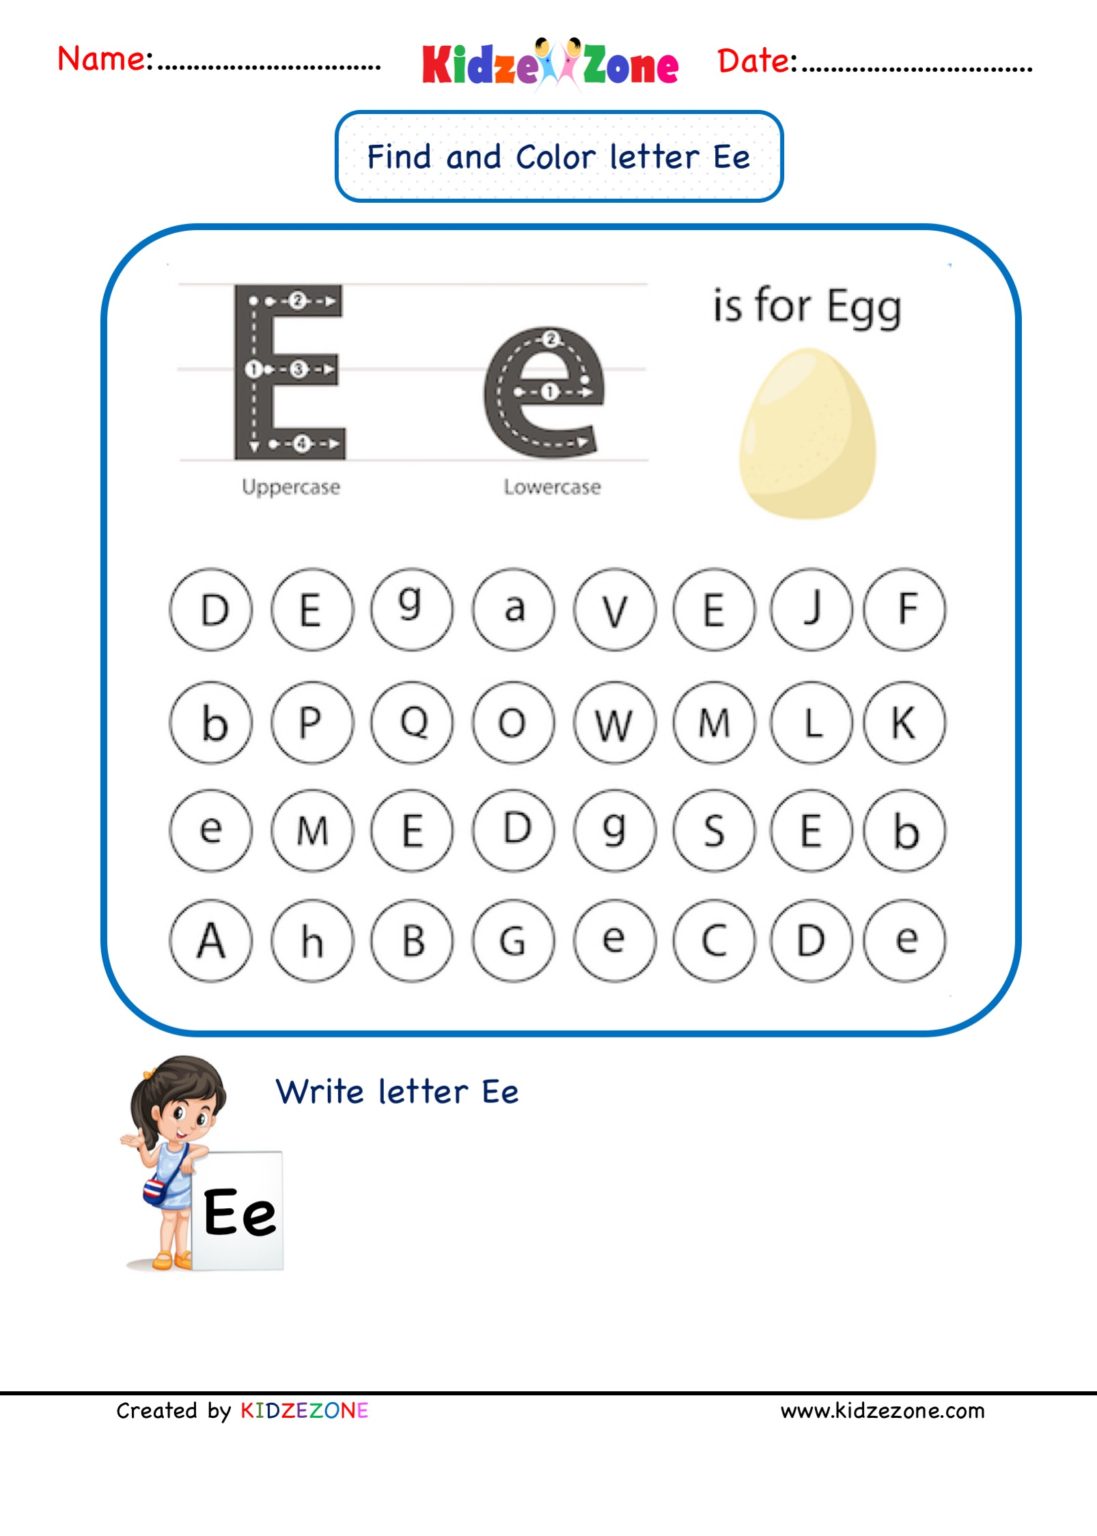 kindergarten-letter-e-find-and-color-worksheet-kidzezone